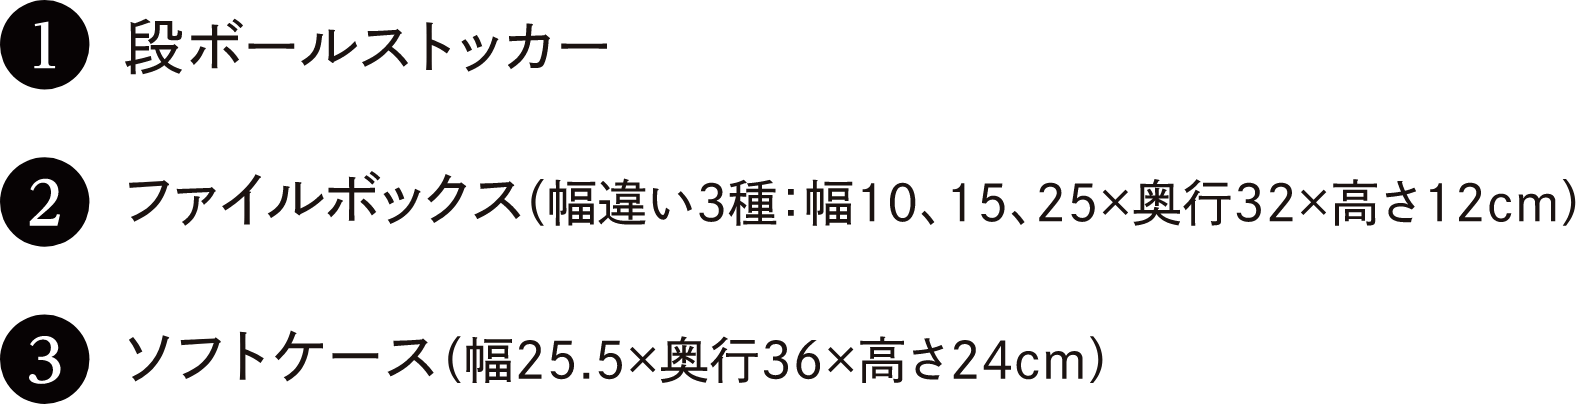 1 段ボールストッカー　2 ファイルボックス（幅違い3種：幅10、15、25×奥行32×高さ12cm）　3 ソフトケース（幅25.5×奥行36×高さ24cm）